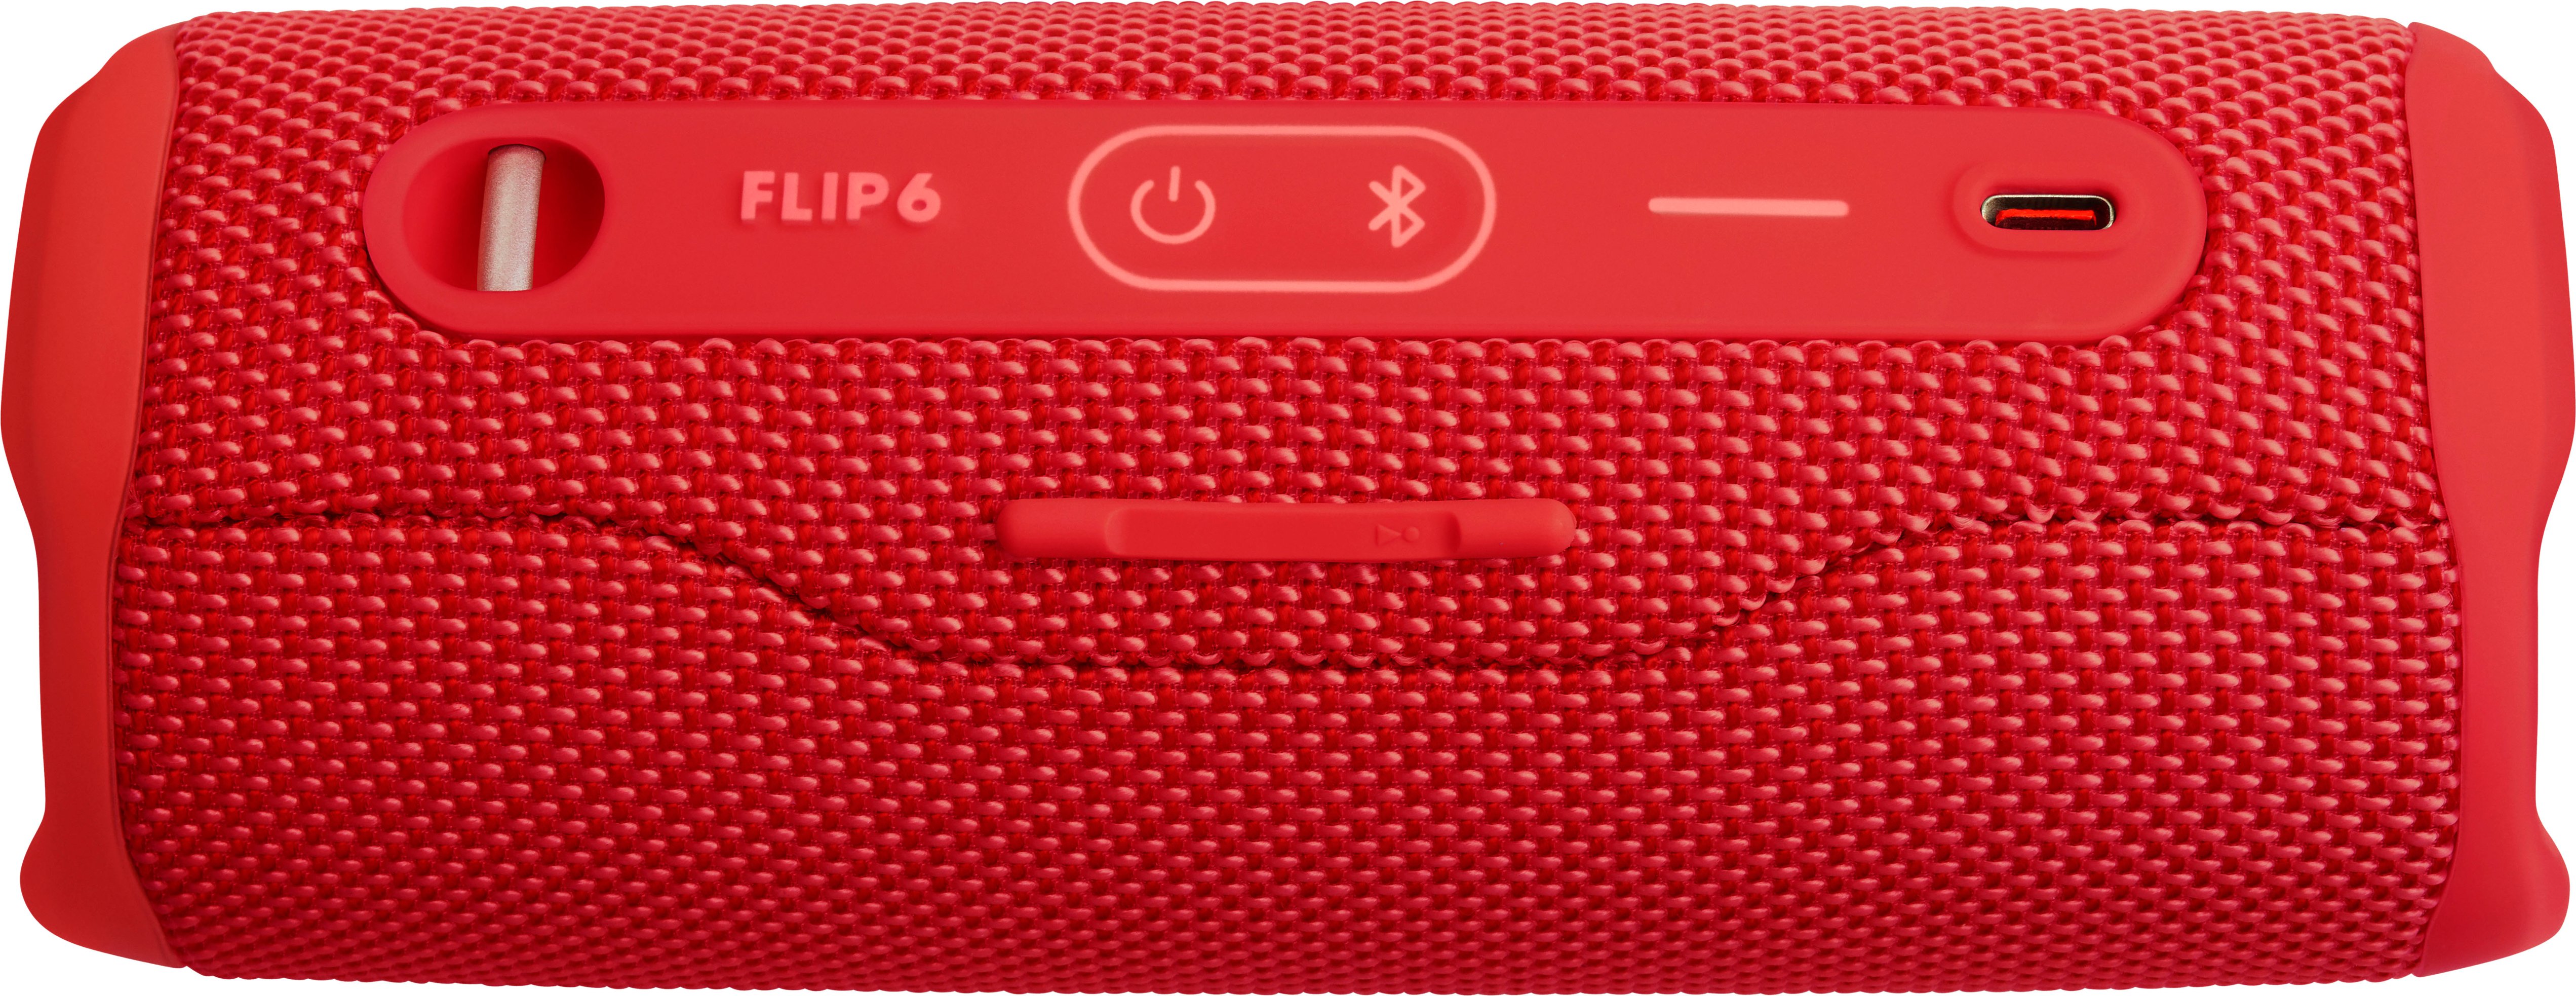 Portable JBL FLIP6 Buy JBLFLIP6REDAM Speaker Waterproof - Red Best